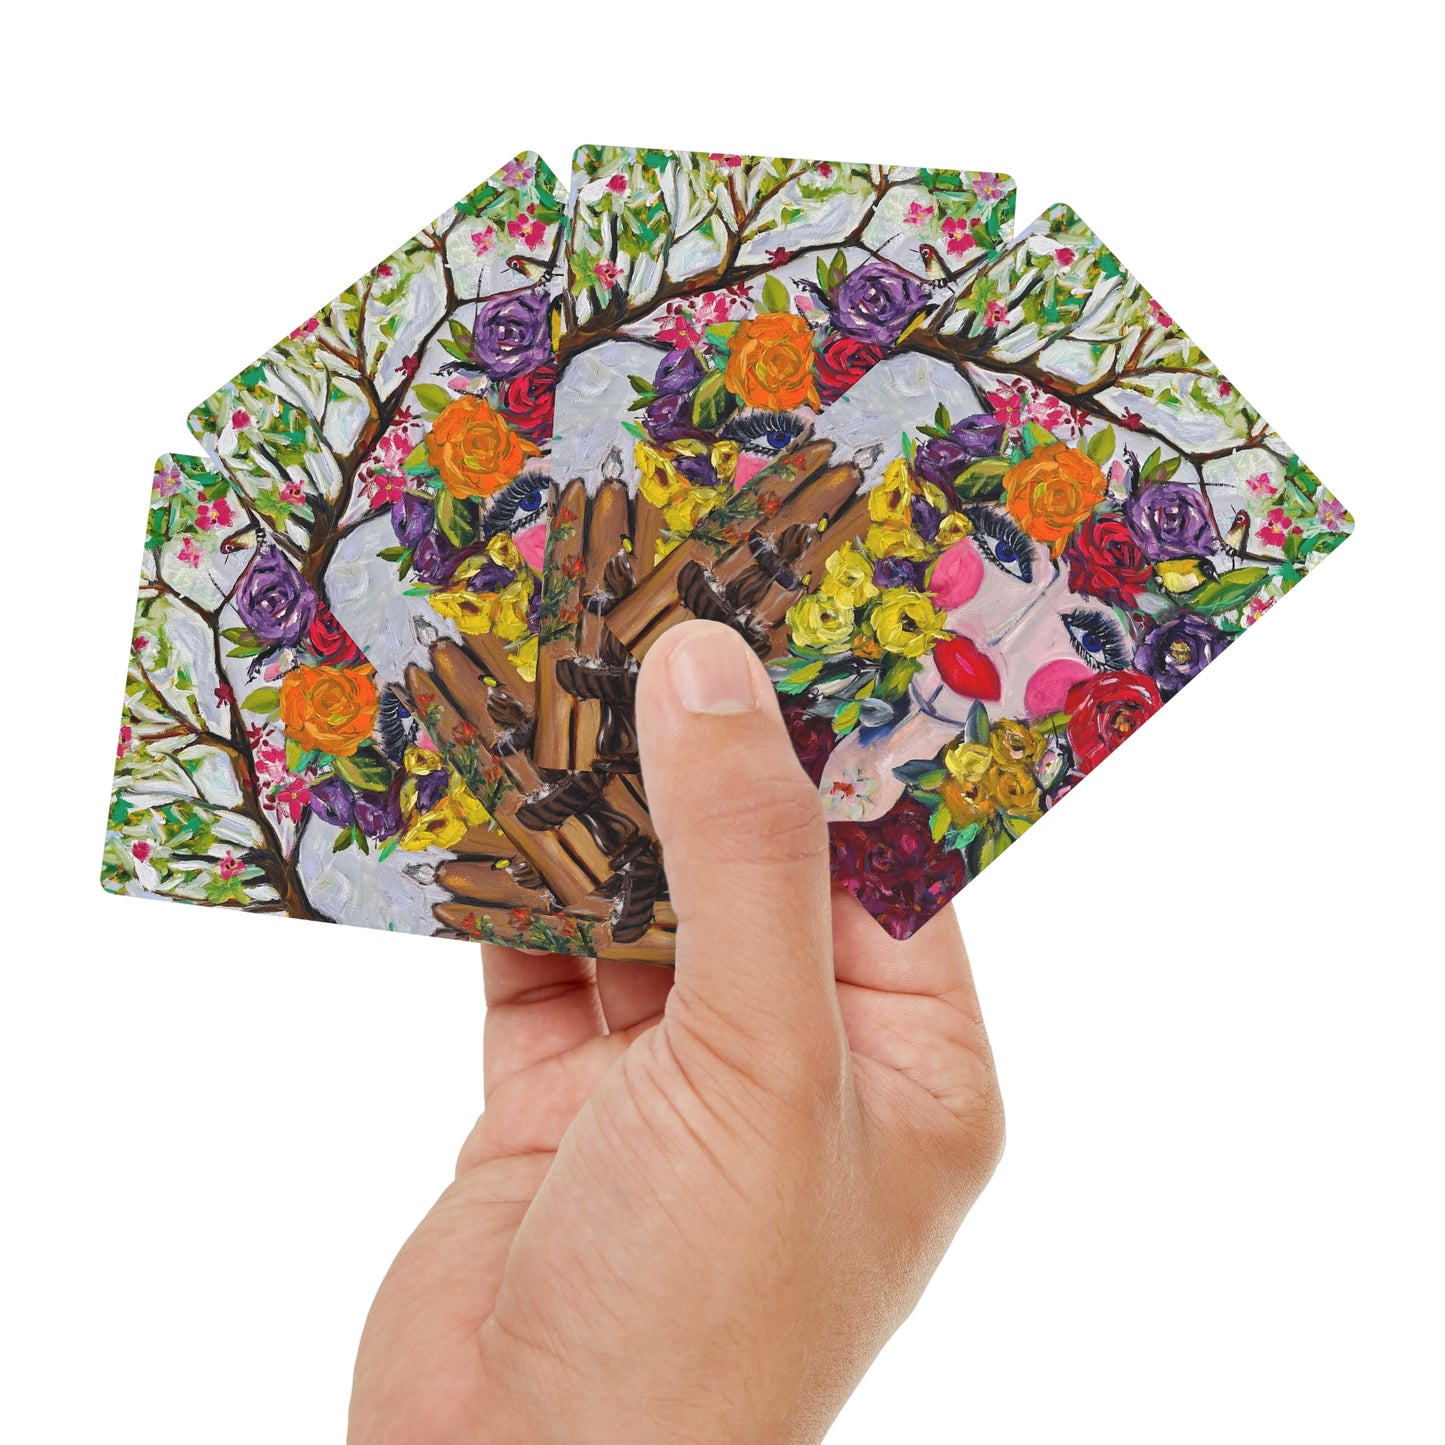 Cartes de poker/cartes à jouer colorées d'oiseaux et de fleurs